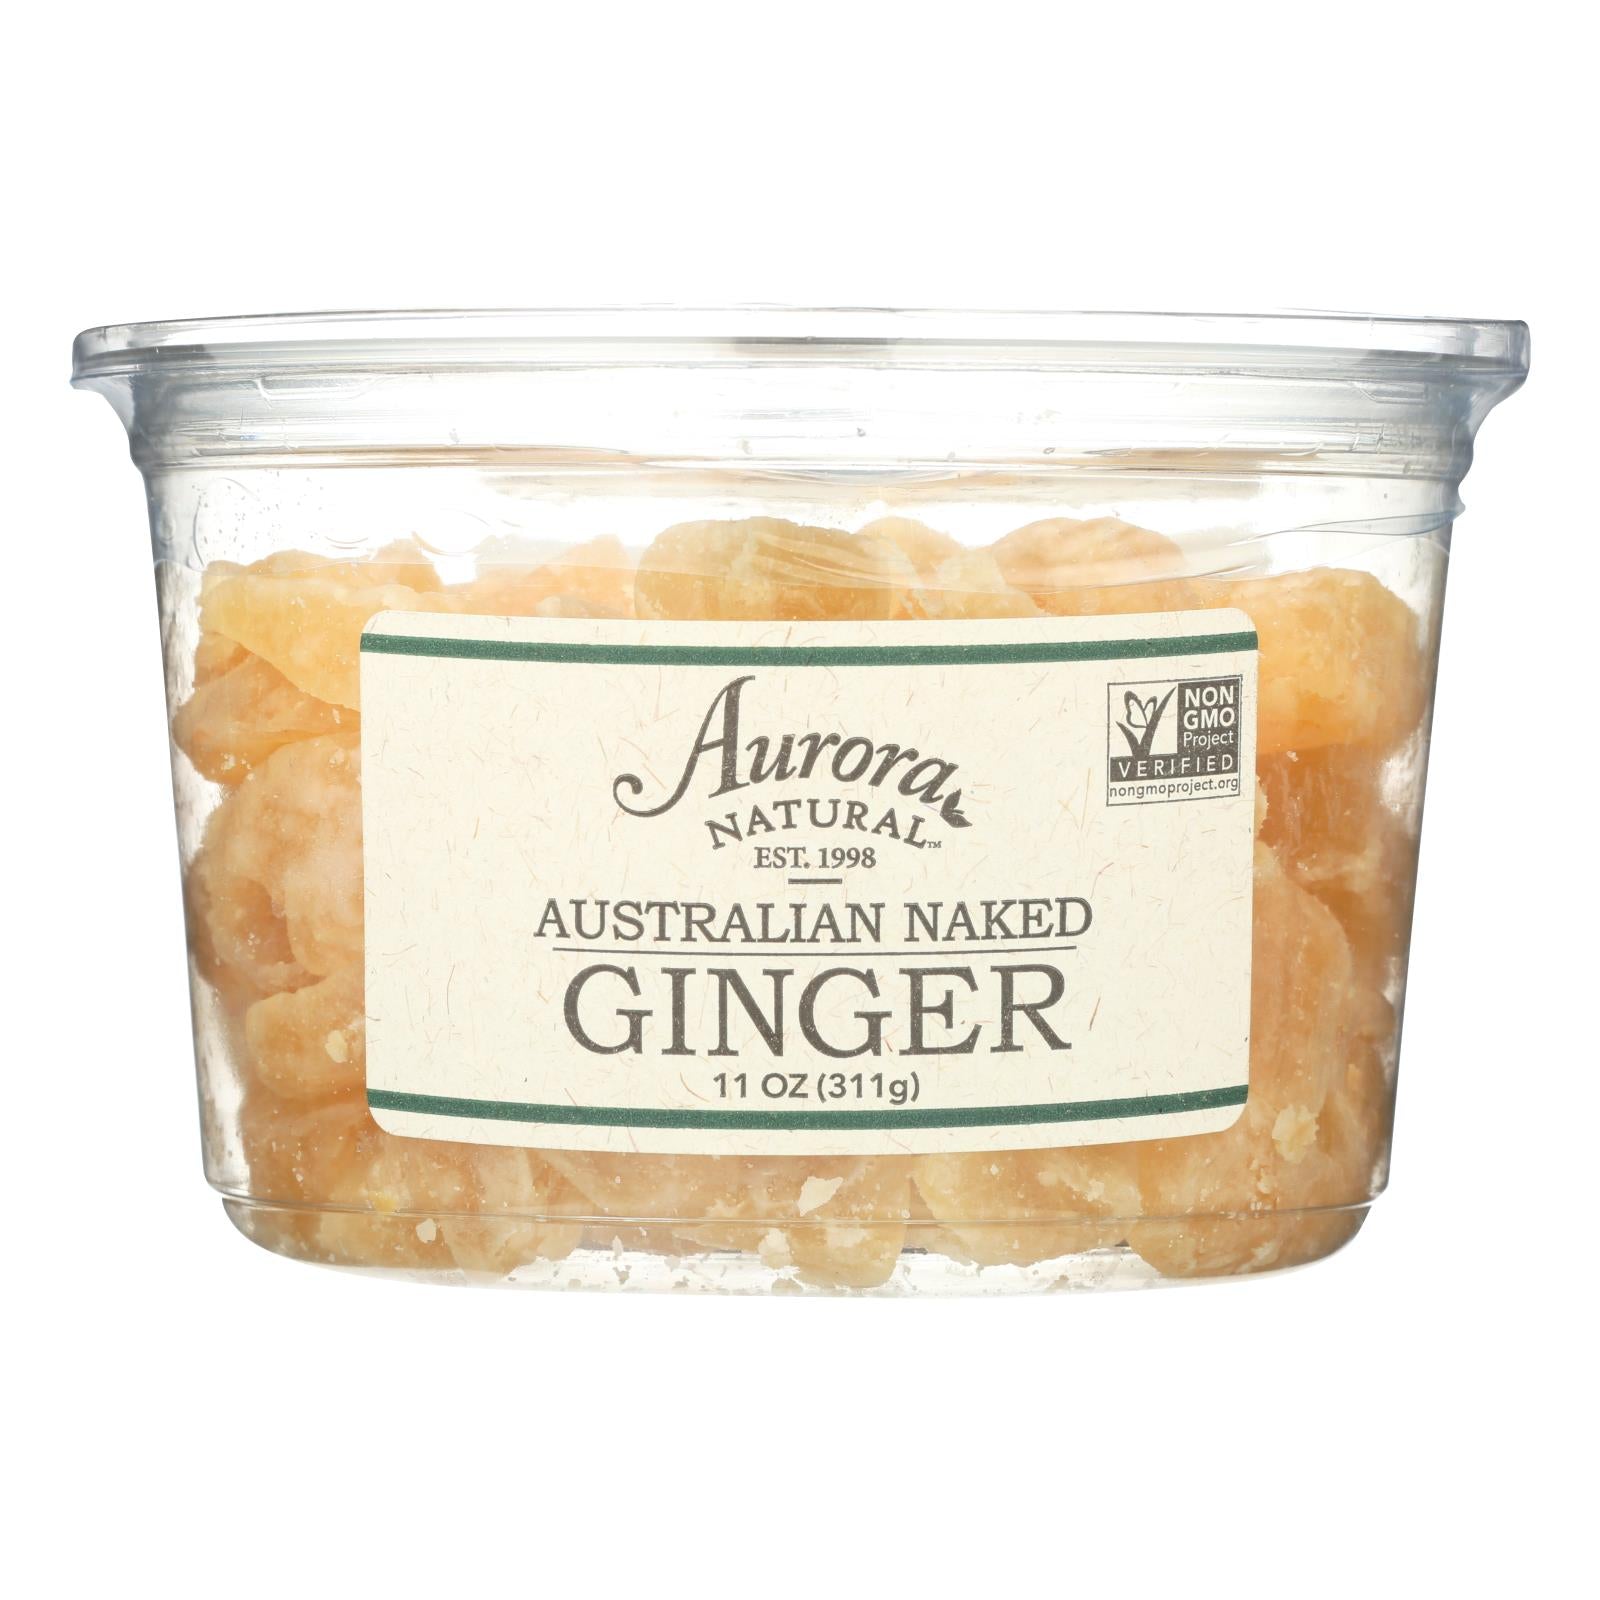 Aurora Natural Products, Aurora Natural Products - Australian Naked Ginger - Case of 12 - 11 oz. (Pack of 12)